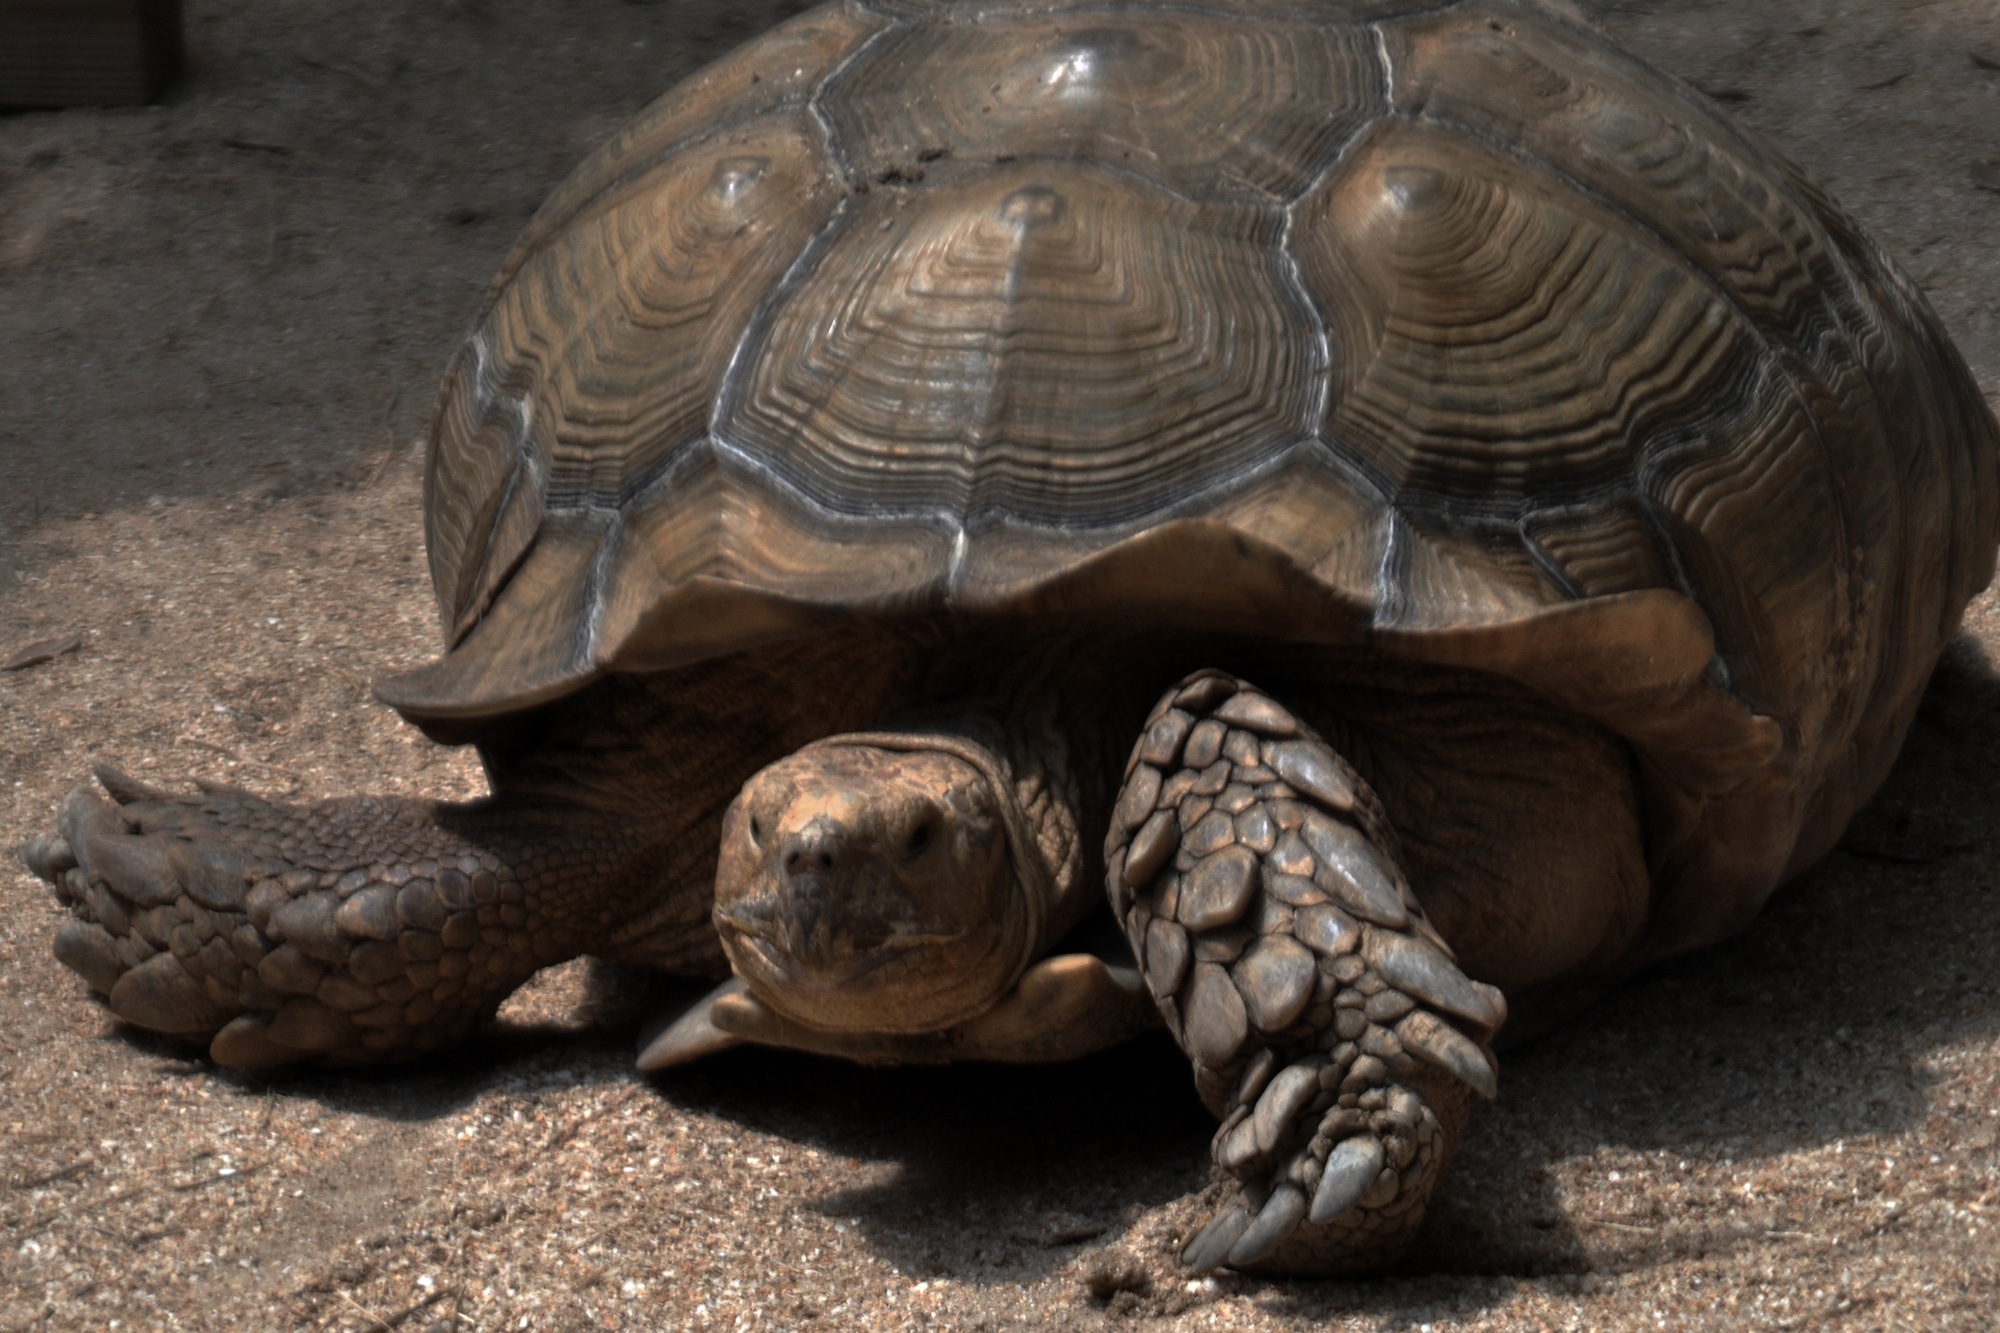 Tortoise in Petting Zoo